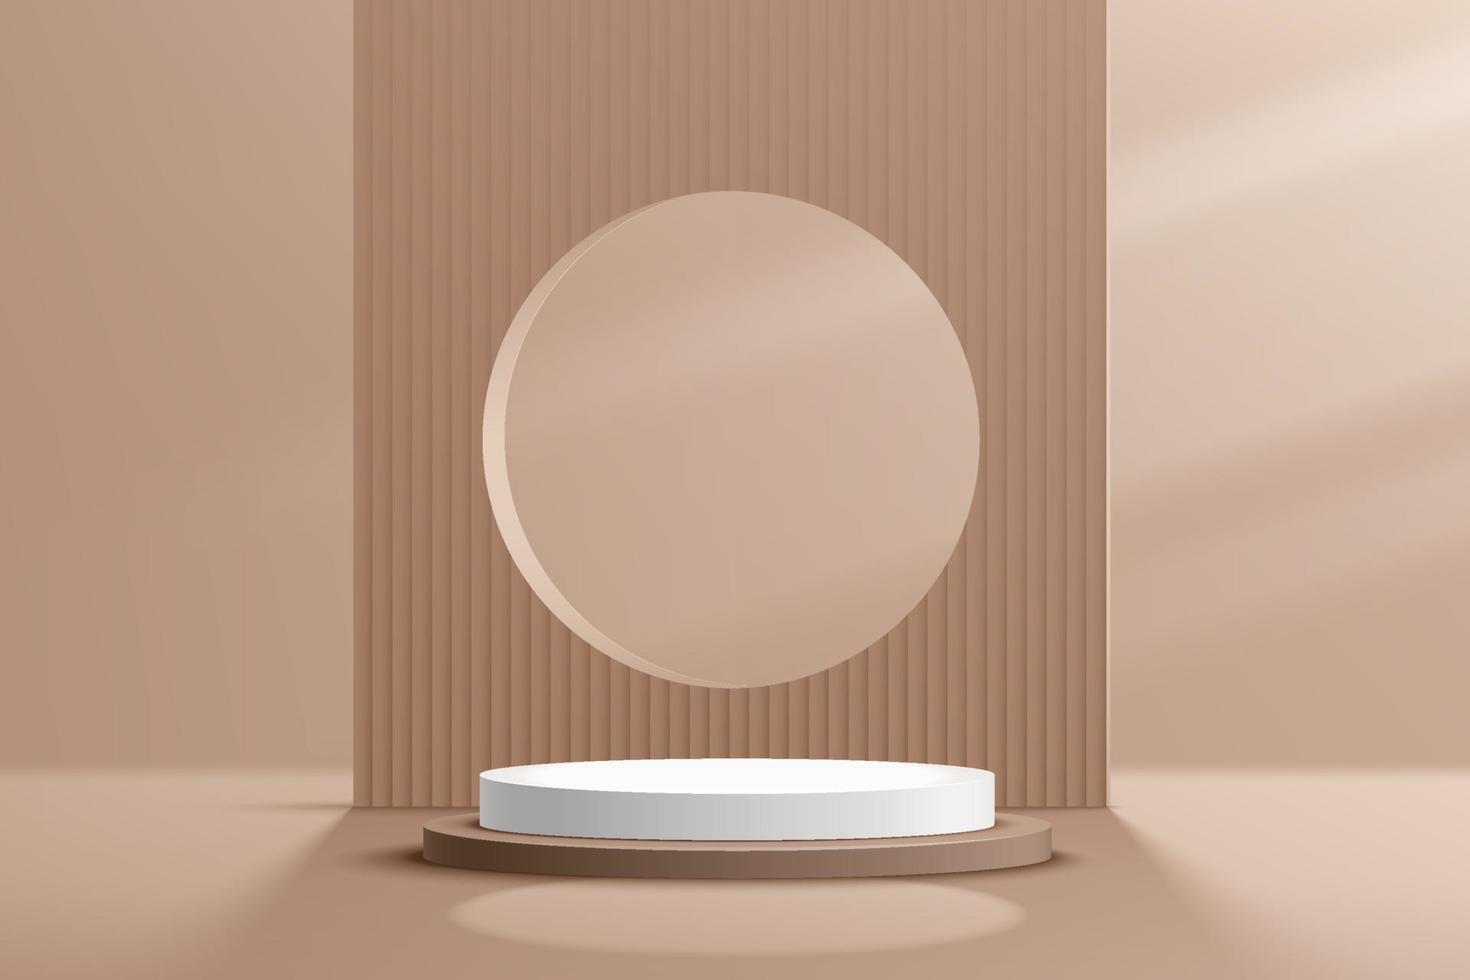 moderno pódio de pedestal em cilindro marrom e branco na sombra. cena de parede mínima de cor bege abstrata. pano de fundo geométrico com textura de linha vertical. renderização de vetor Apresentação de exibição de produto de forma 3d.